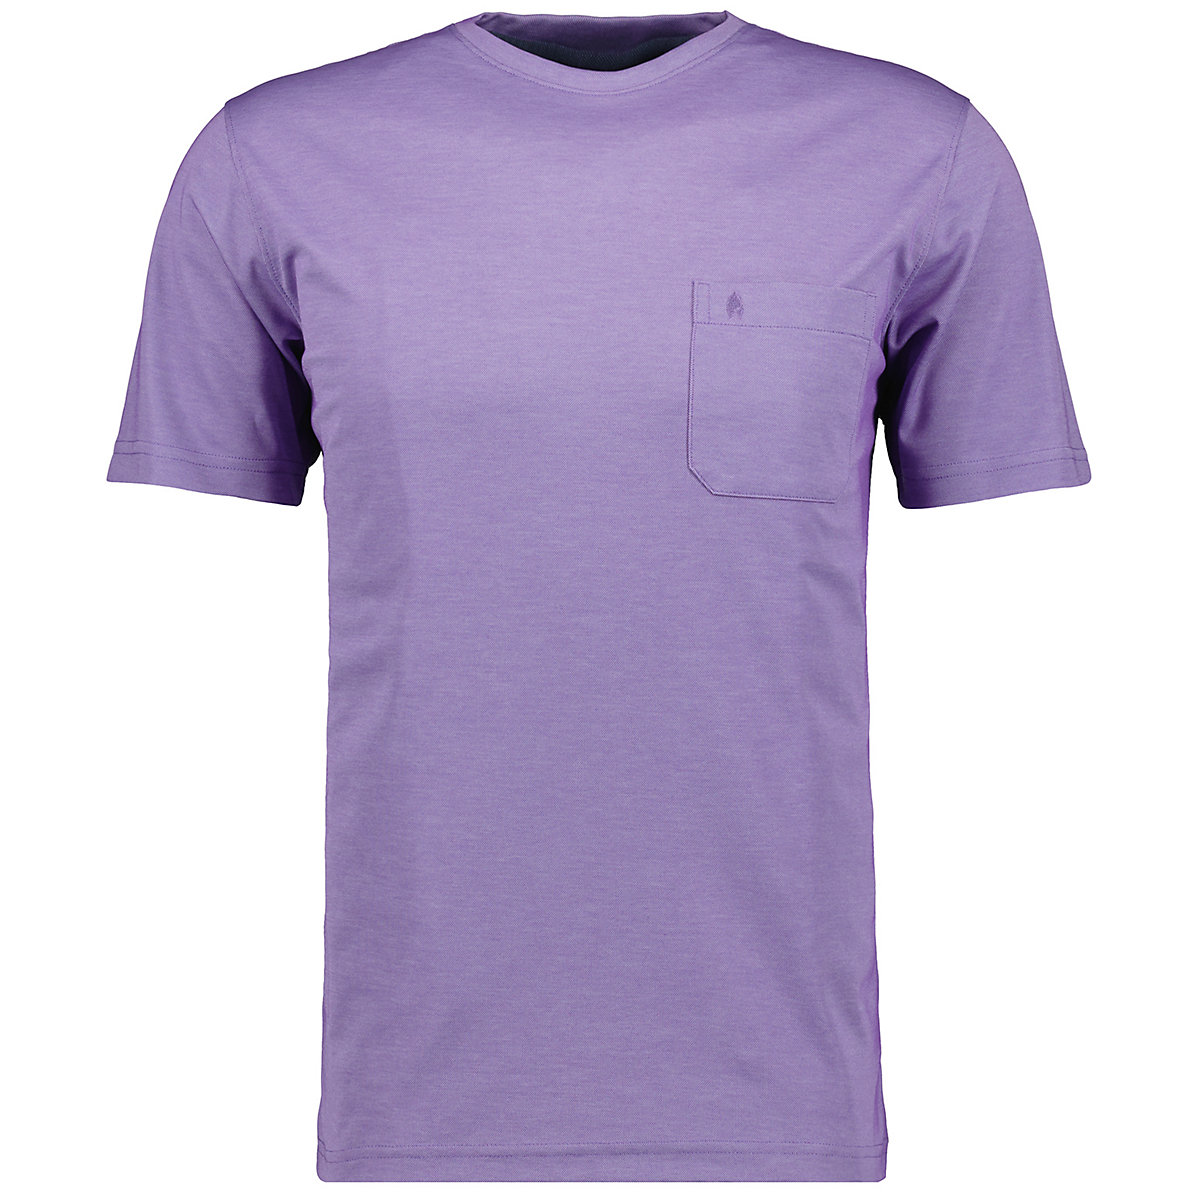 RAGMAN Softknit T-Shirt Rundhals mit Brusttasche T-Shirts flieder